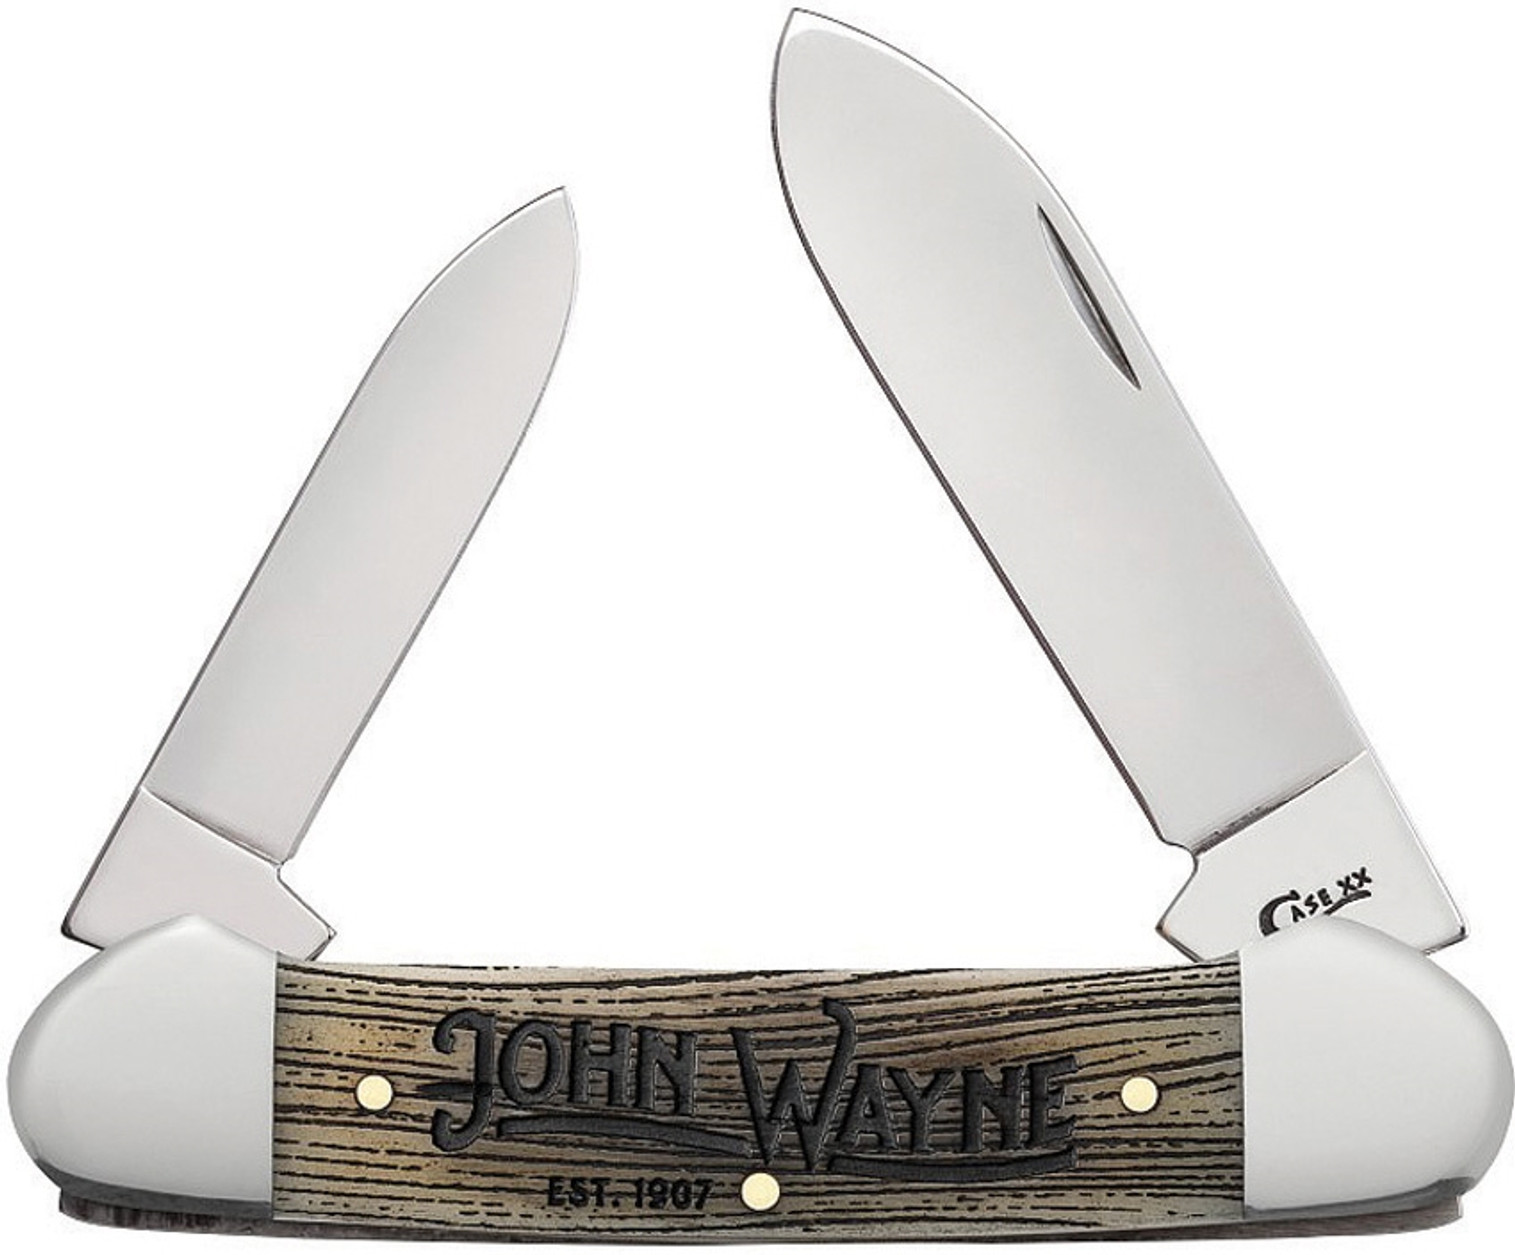 John Wayne Canoe